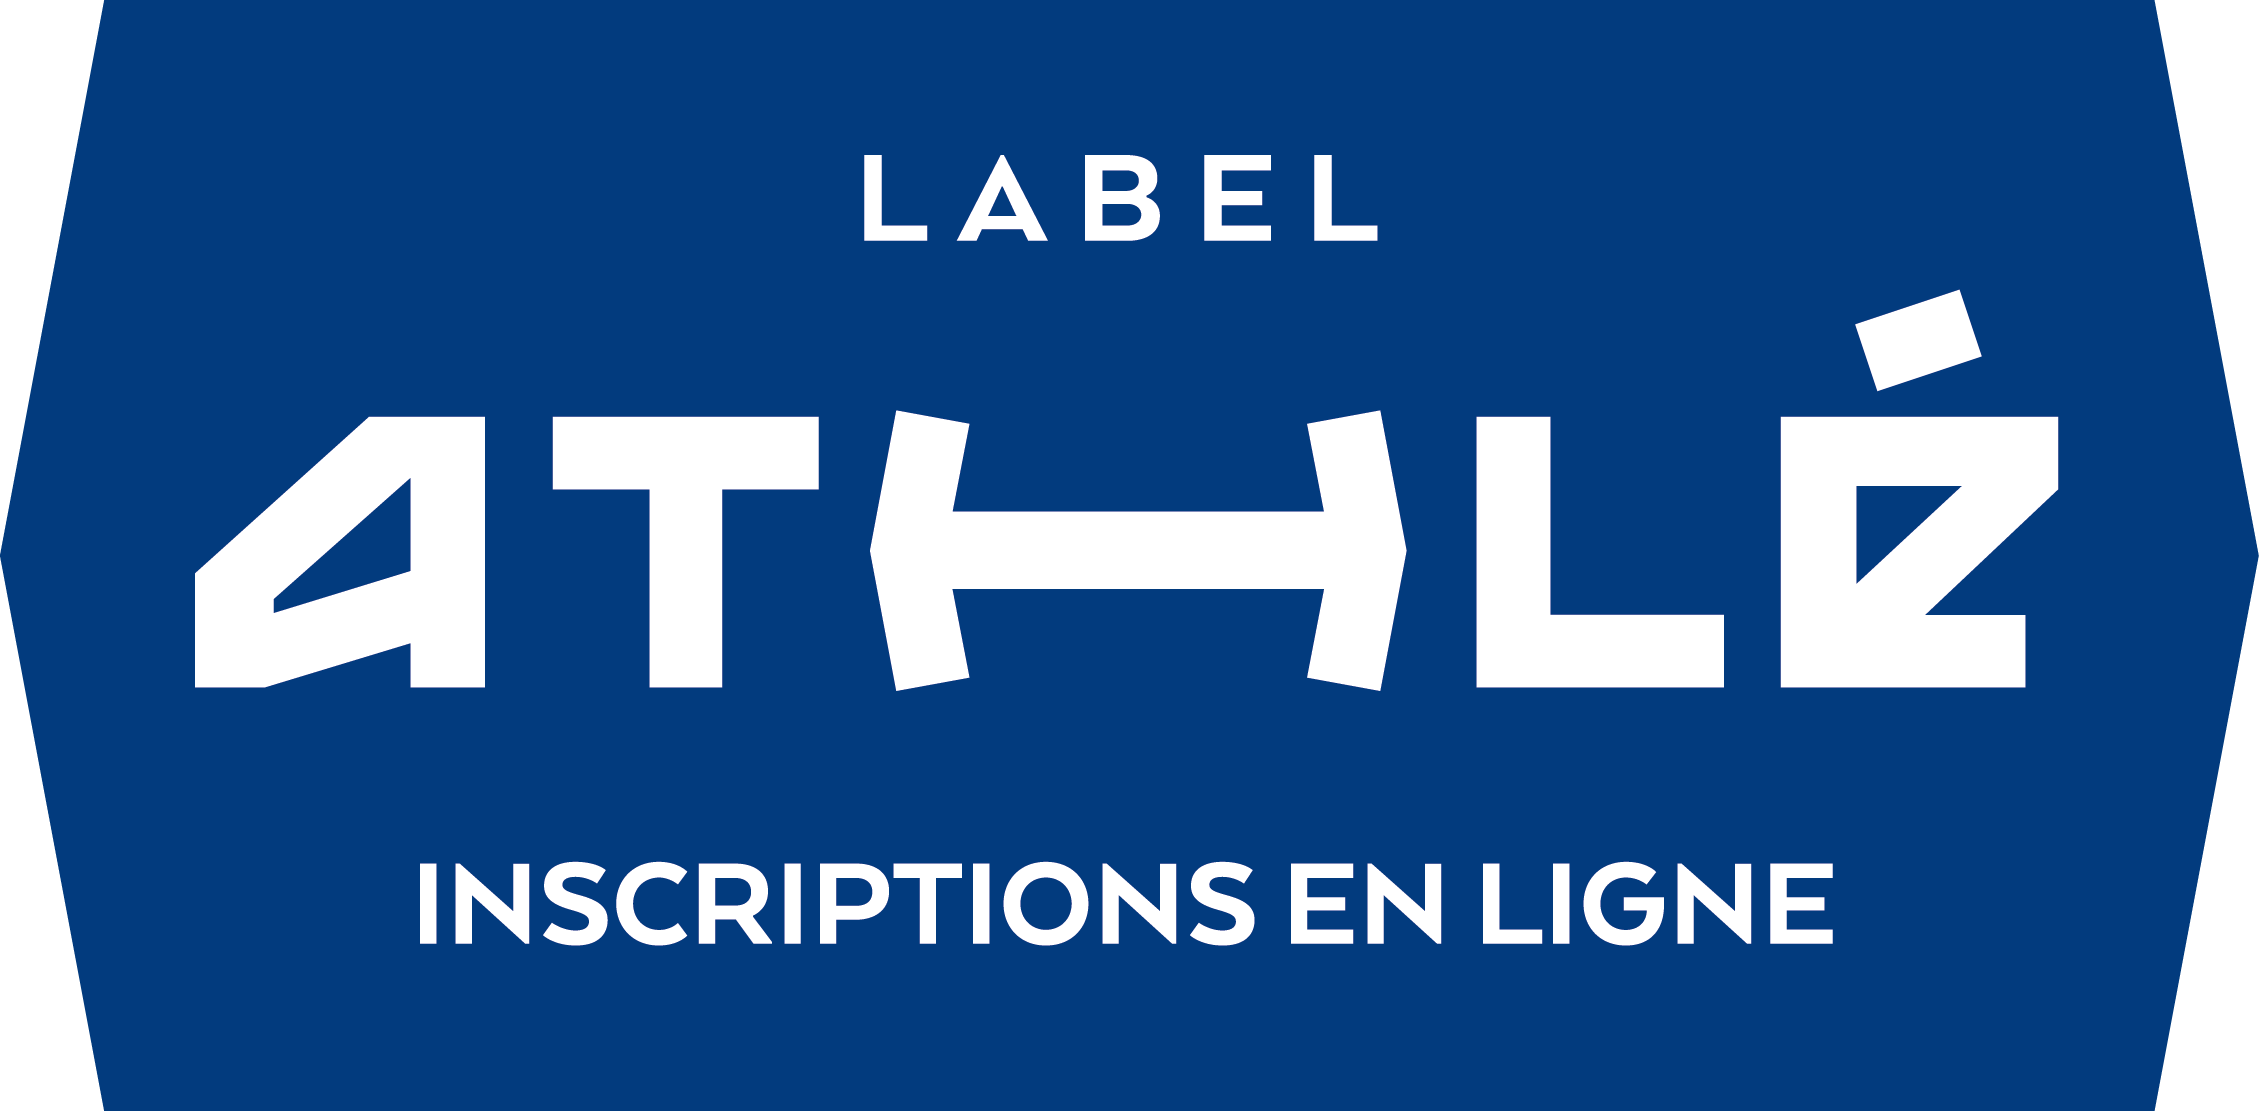 Société d'inscriptions en ligne labellisée par la Fédération Française d'Athlétisme Hors Stade (Label inscritpions en ligne FFA)